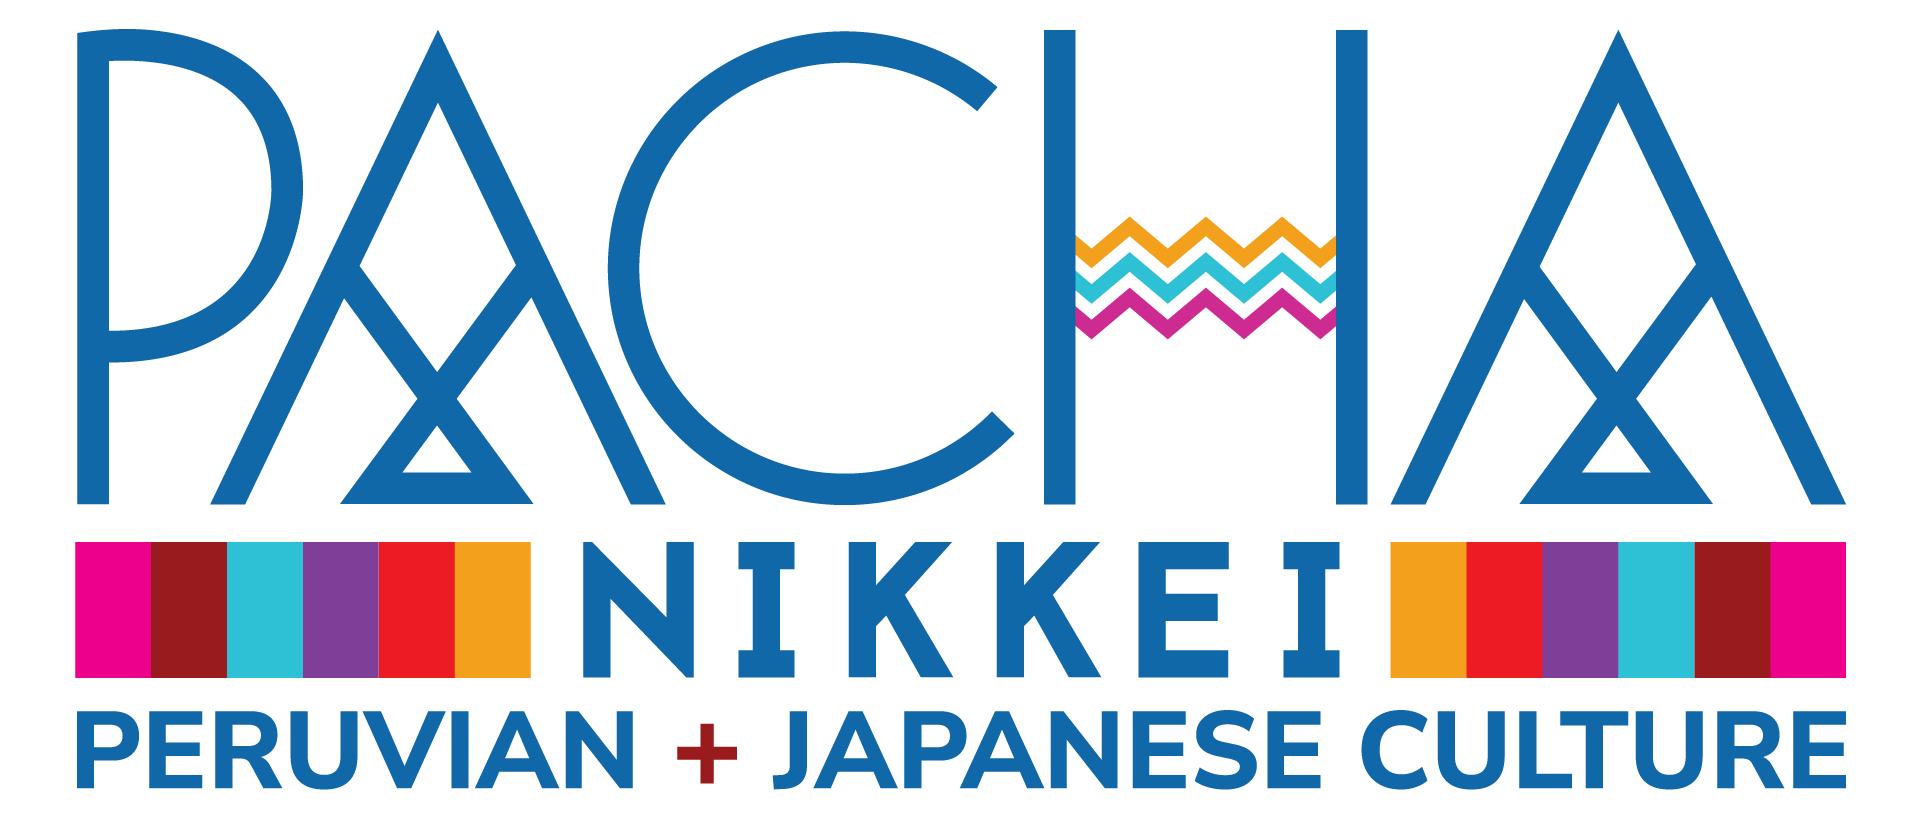 Pacha Nikki Peruvian + Japanese Culture